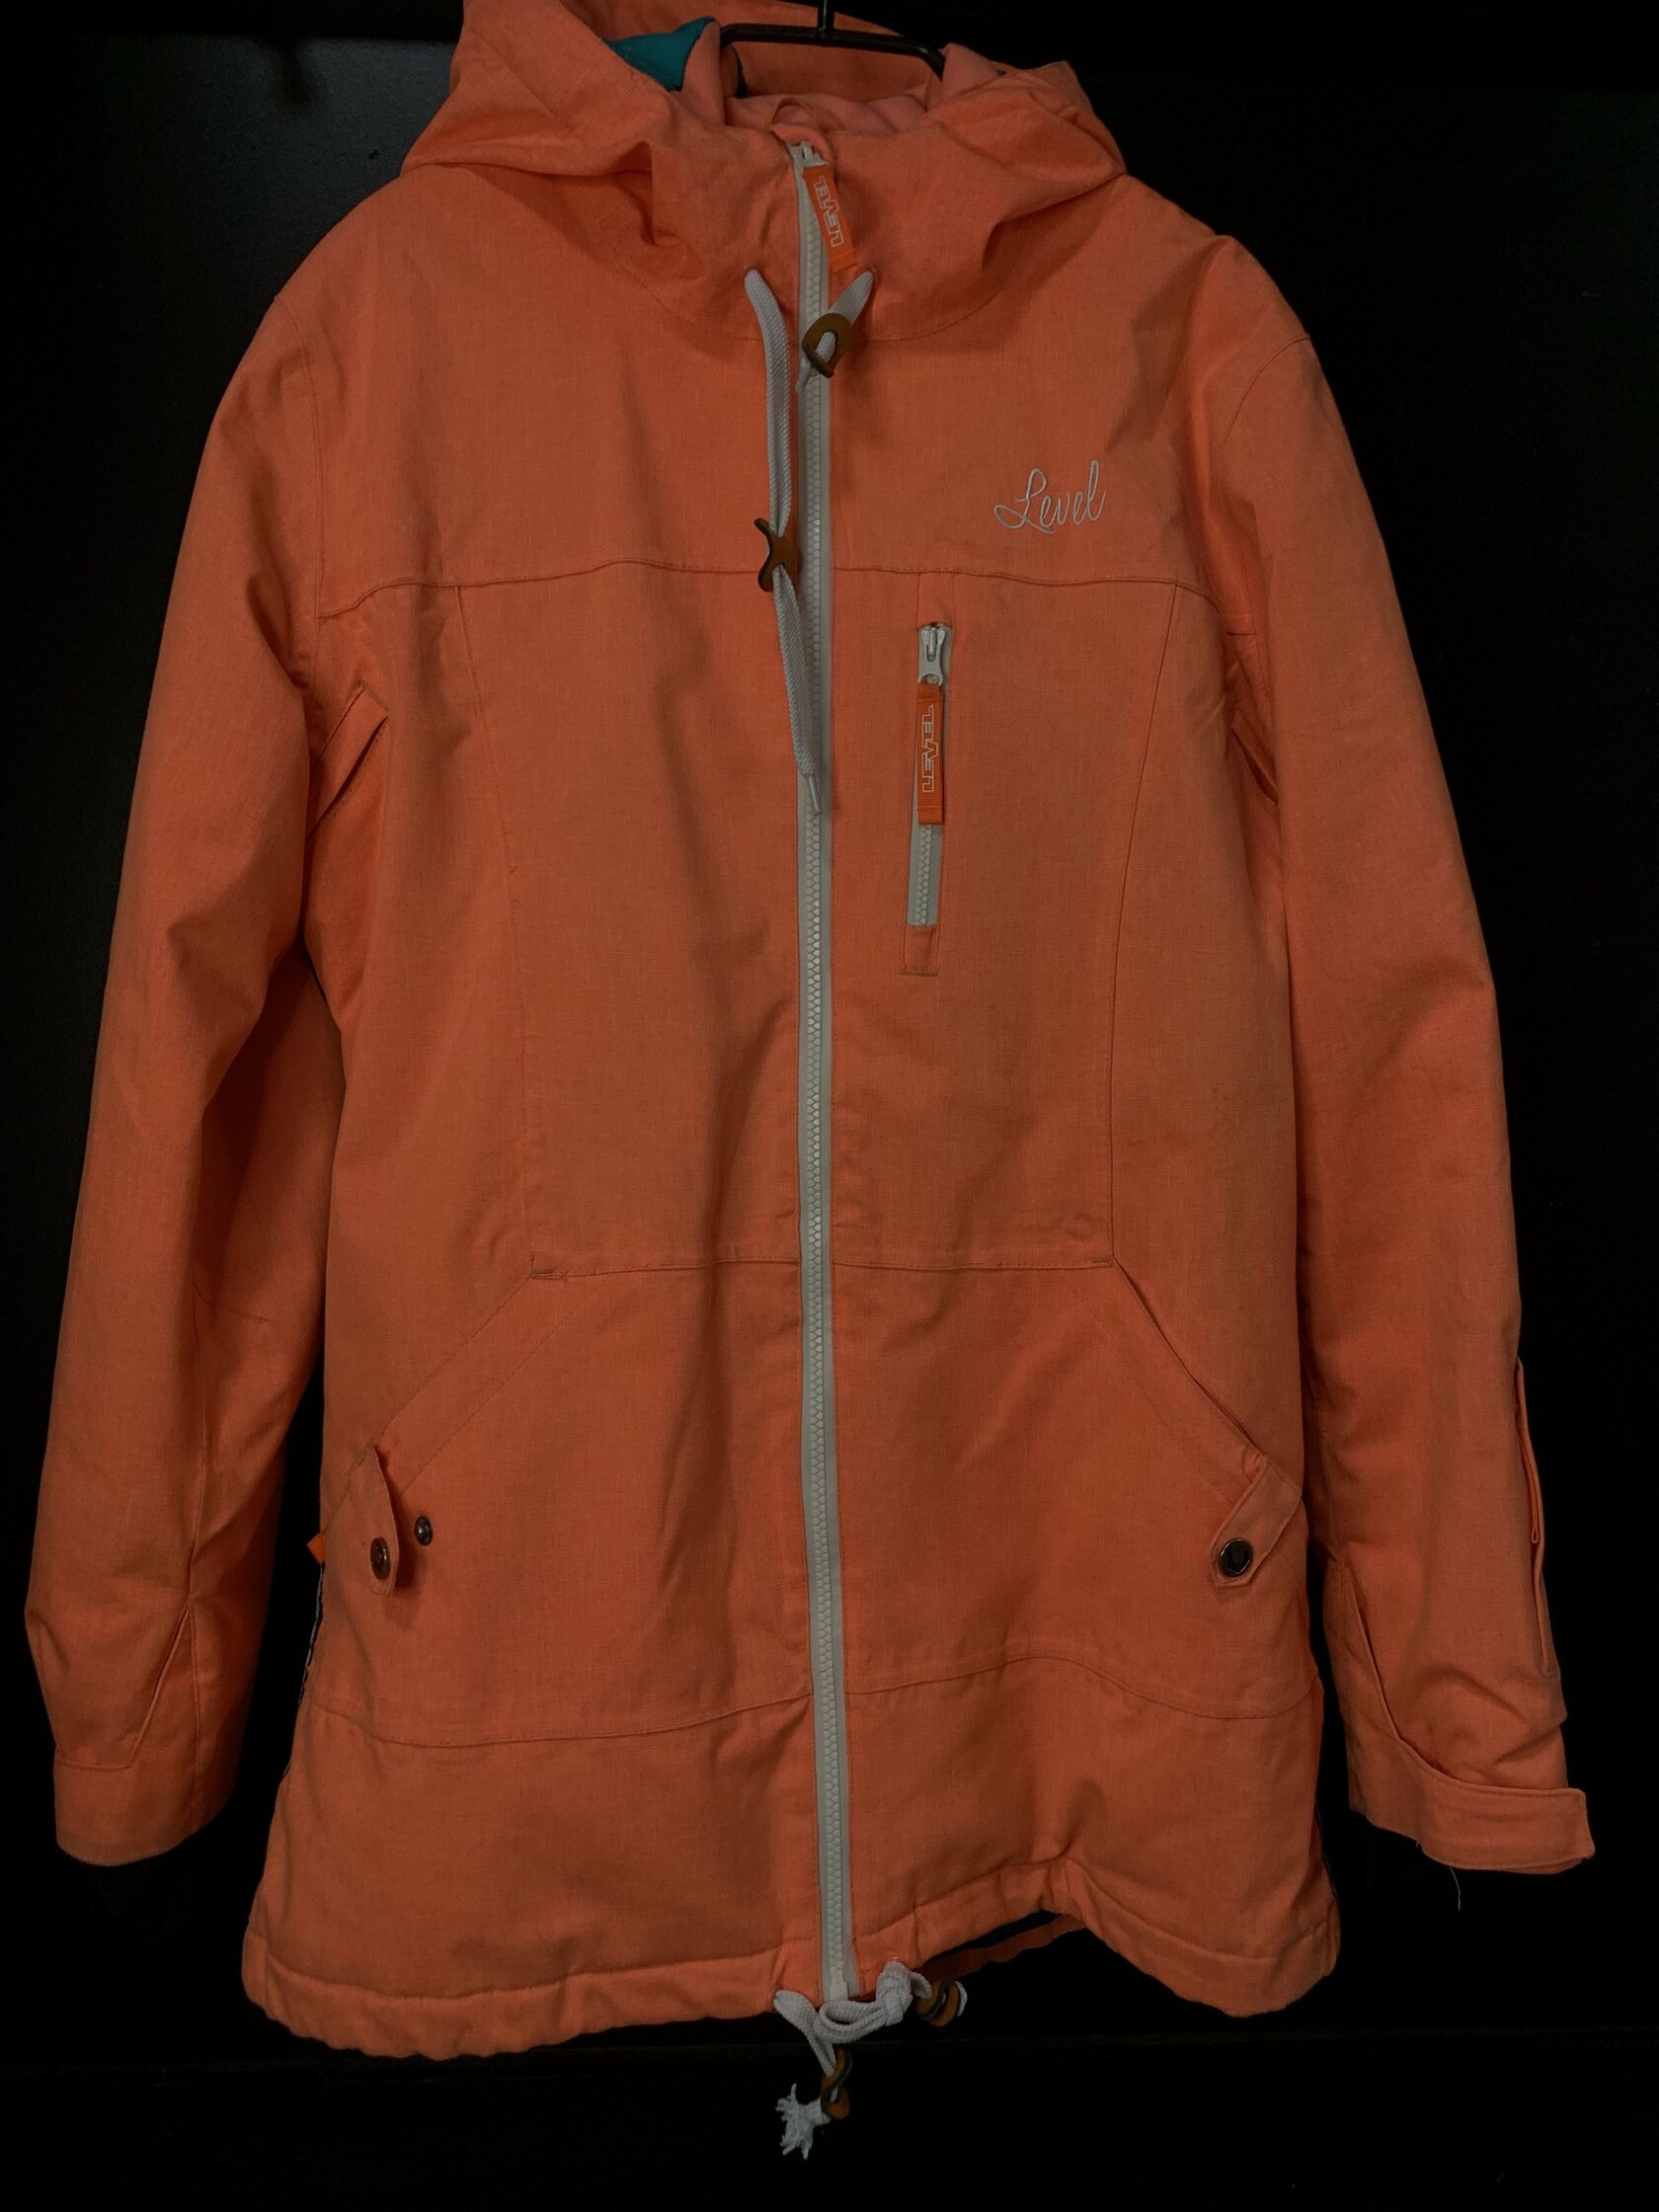 Прокат горнолыжной одежды в Омске - Куртка Level, персиковая